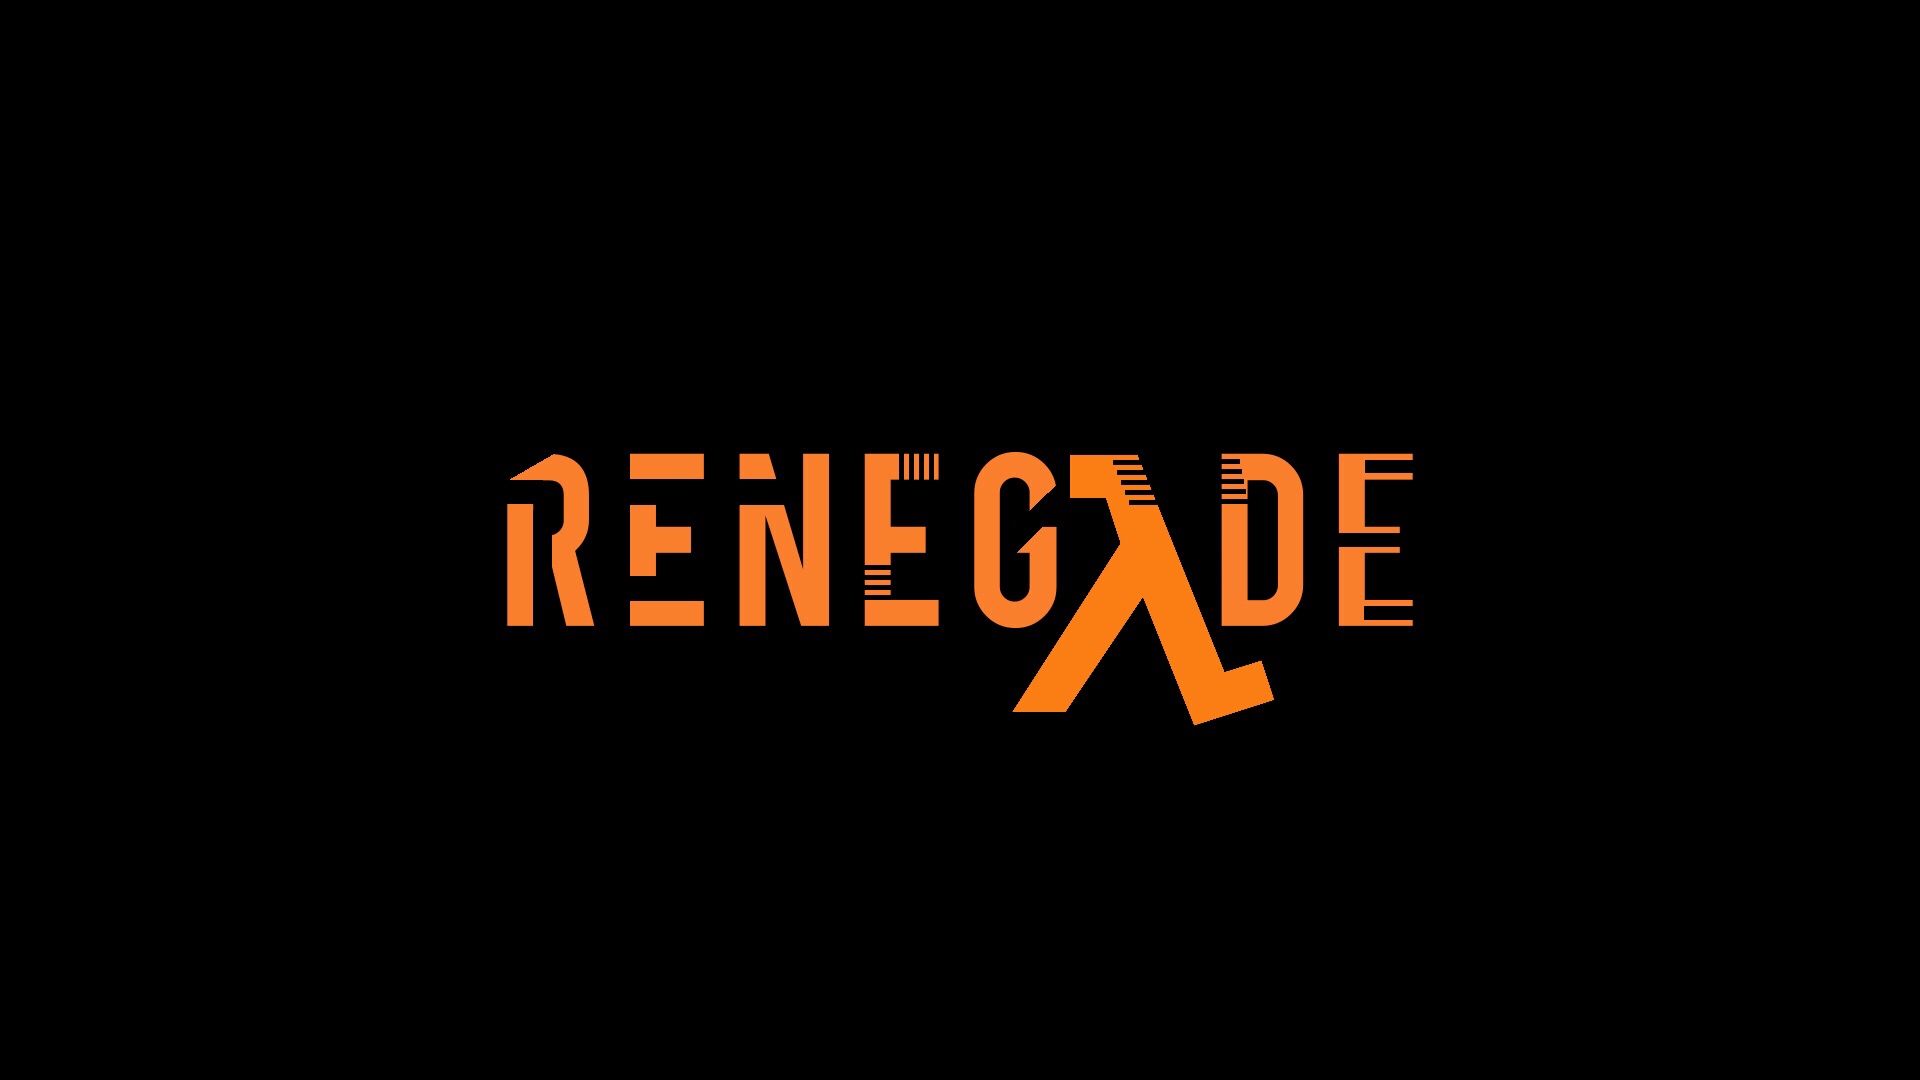 renegade logo ideas 4